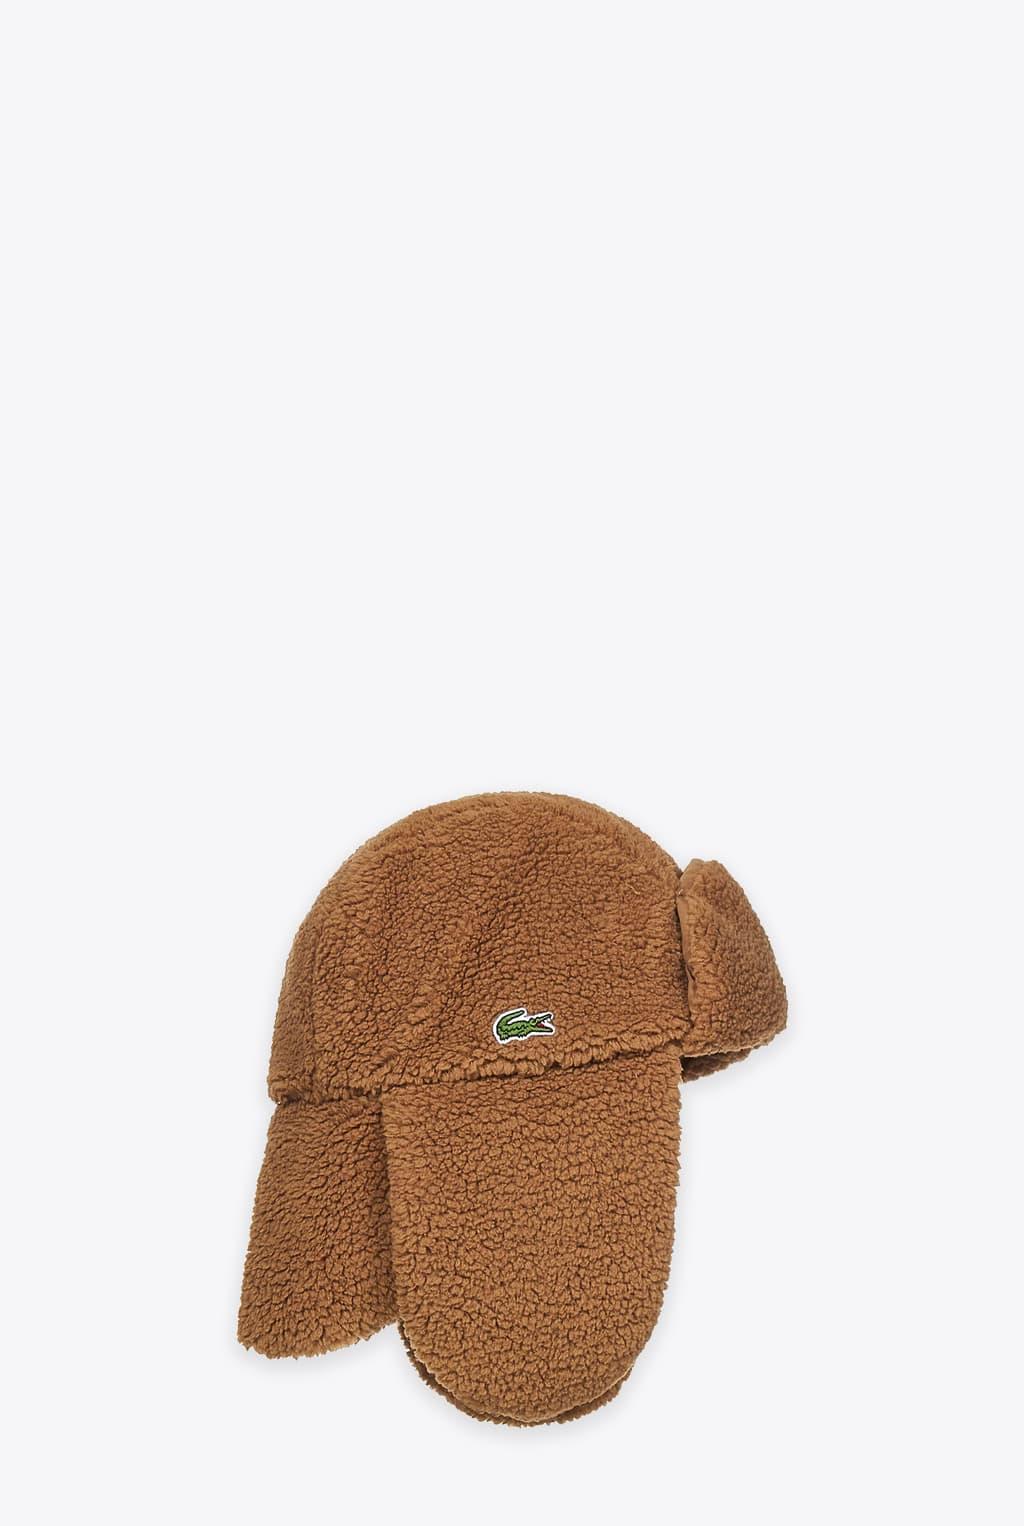 Lacoste Cappellino Beige Faux Sheepeskin Chapka Hat in Brown | Lyst